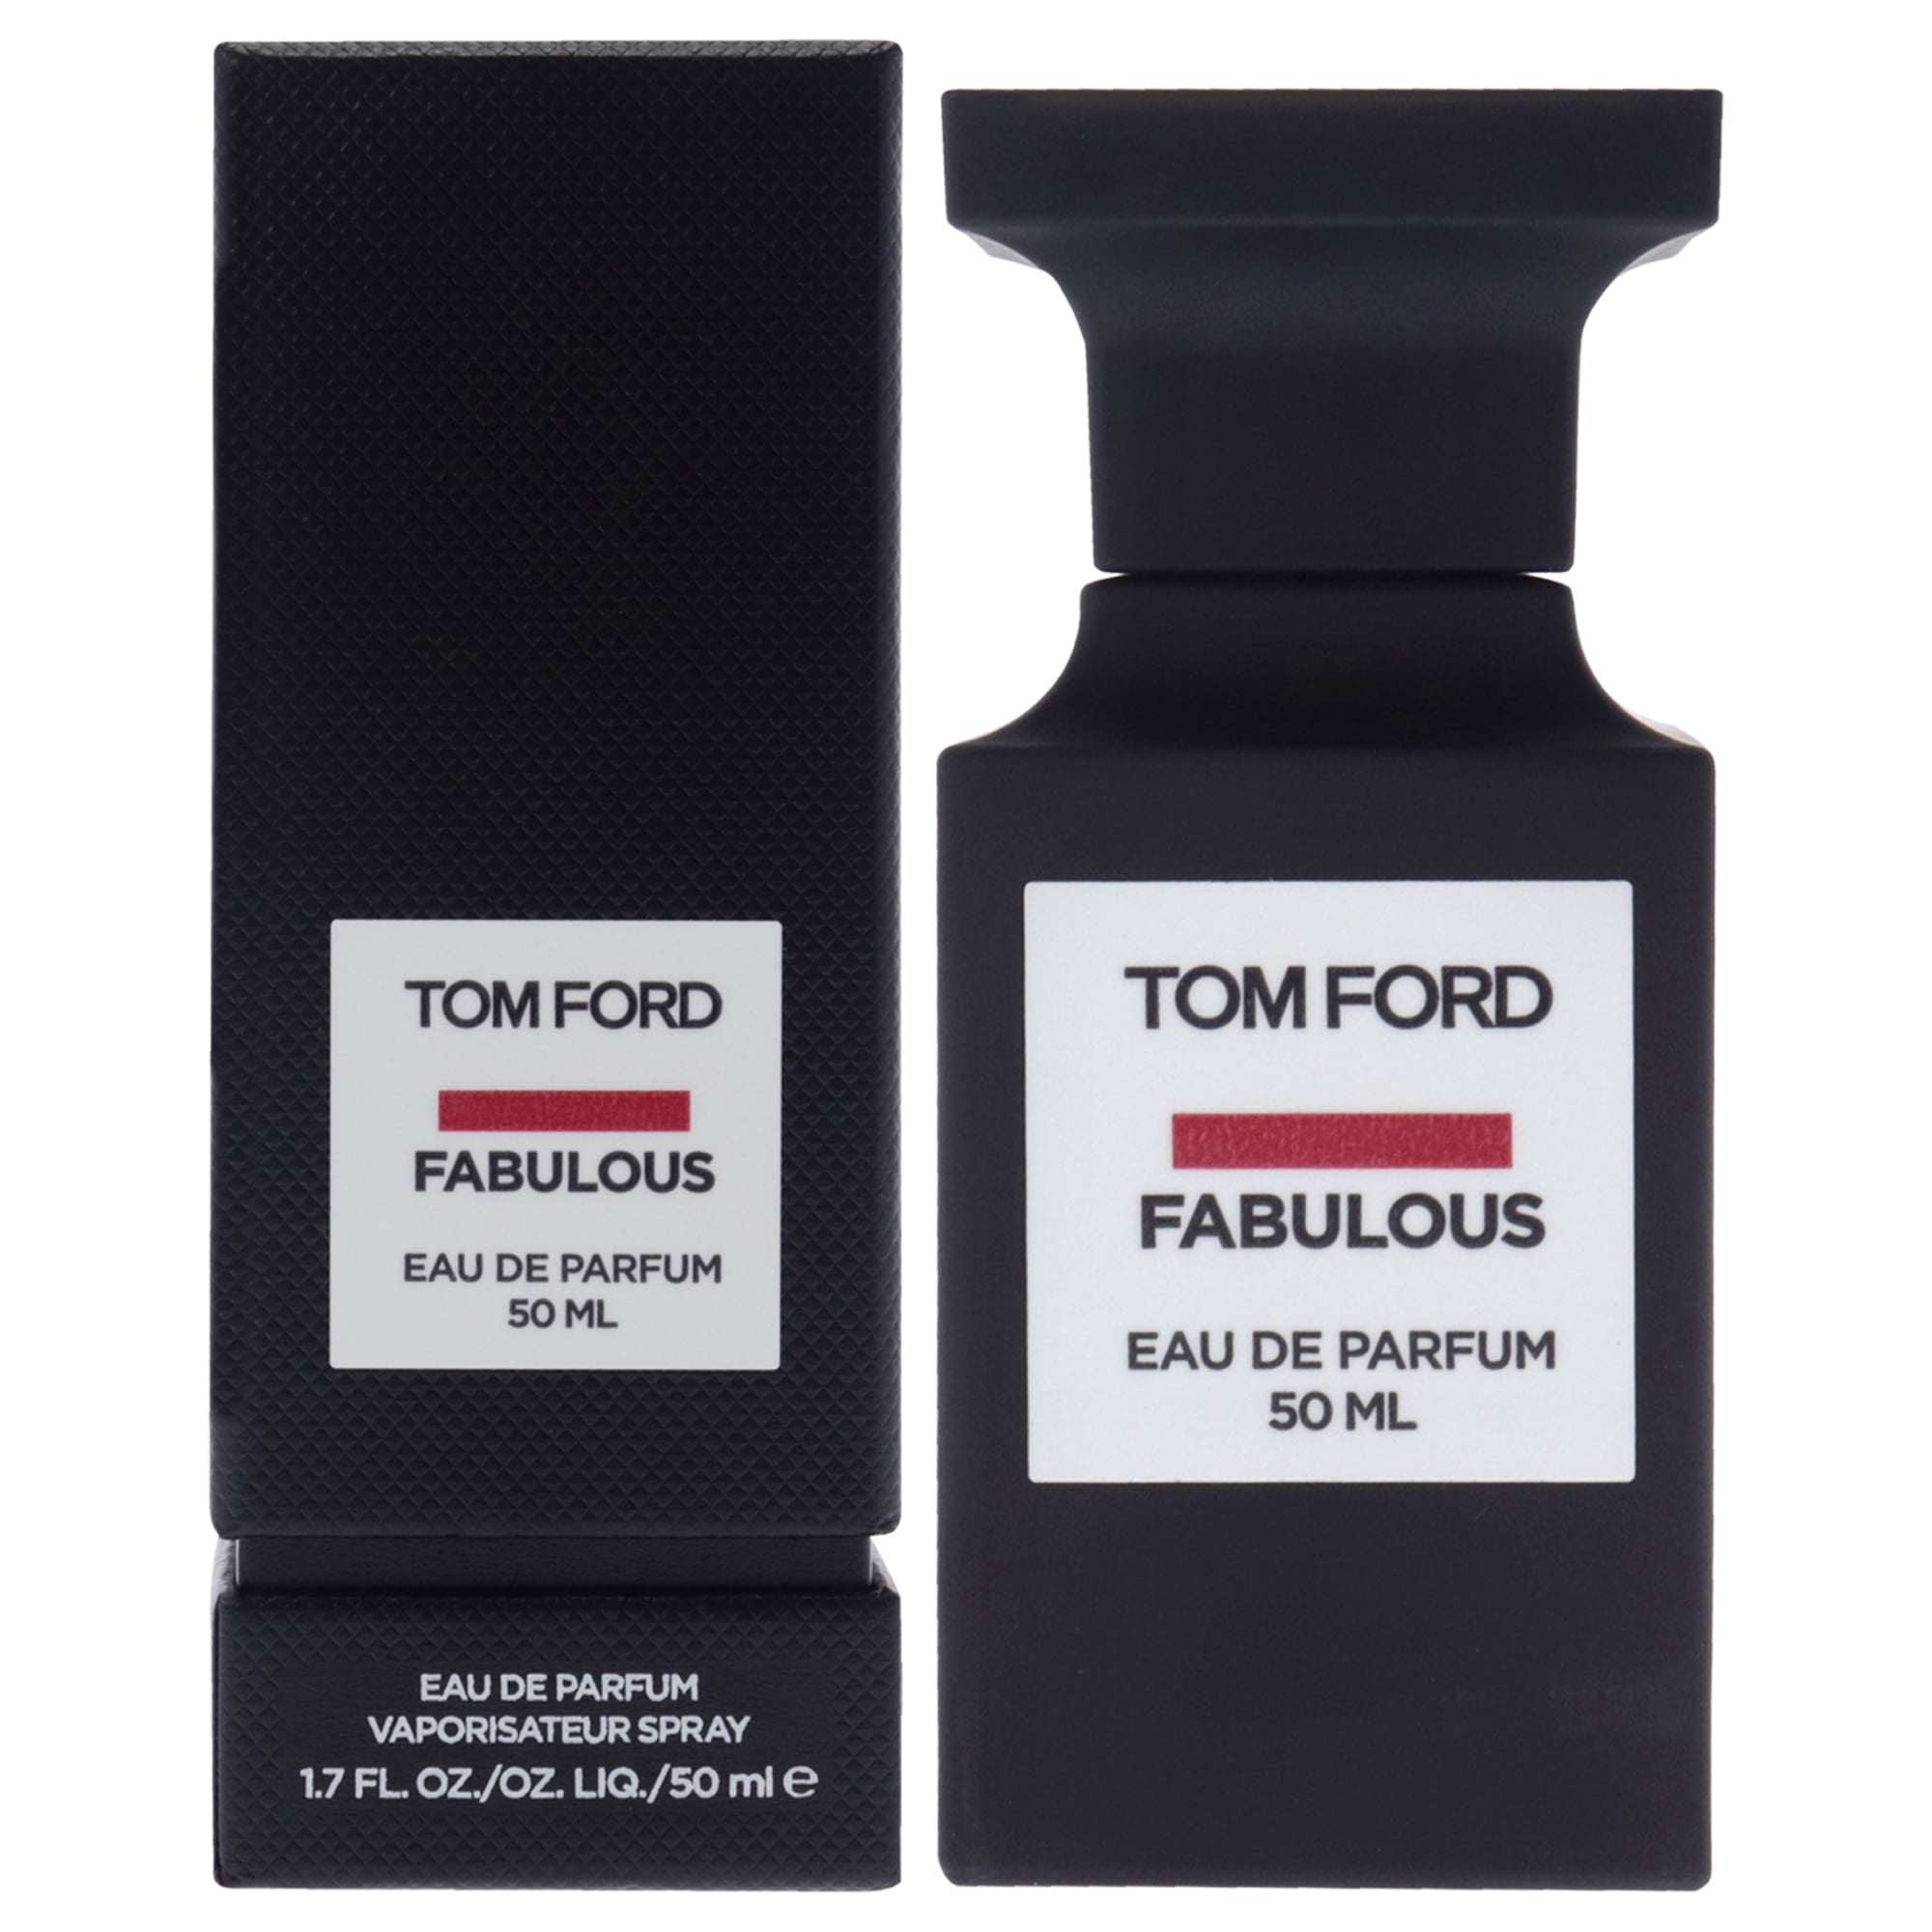 Tom Ford Fabulous Eau De Parfum Spray 50 ml / 1.7 oz - Walmart.com